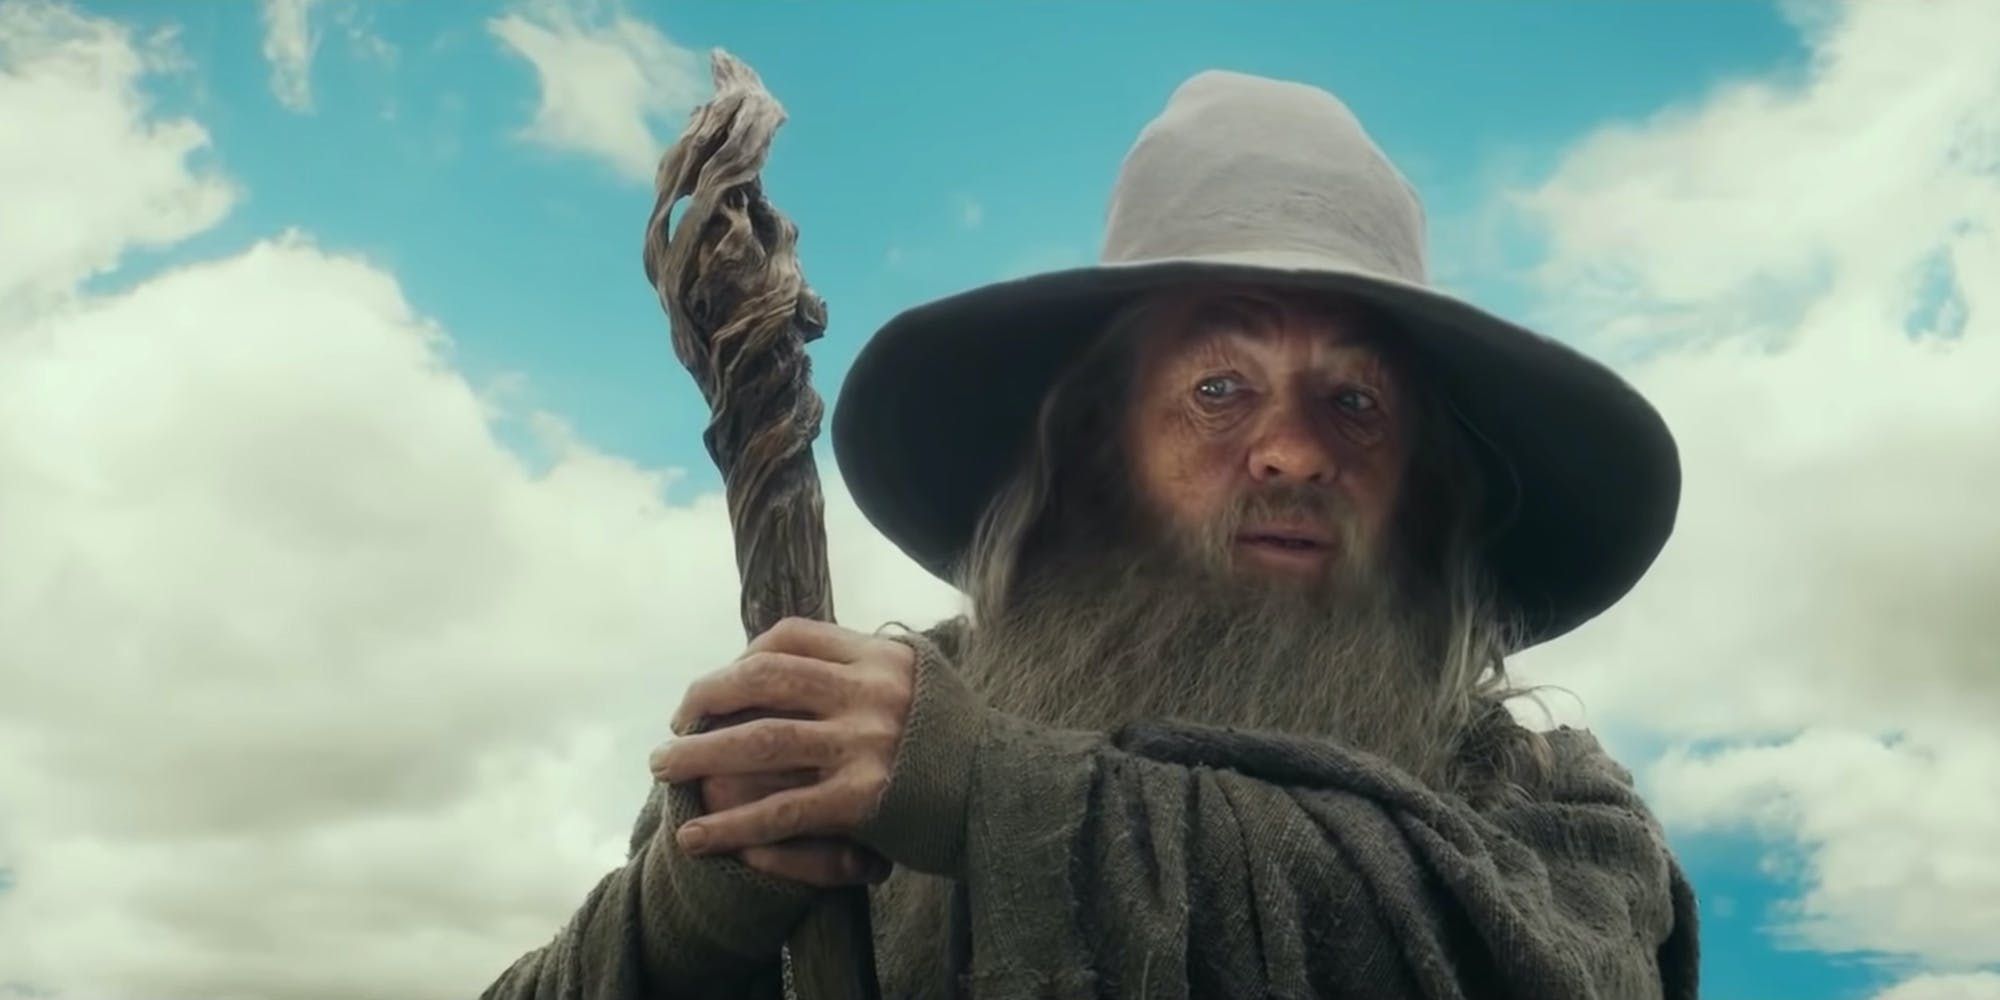 Ian McKellen as Gandalf the Gray in The Hobbit